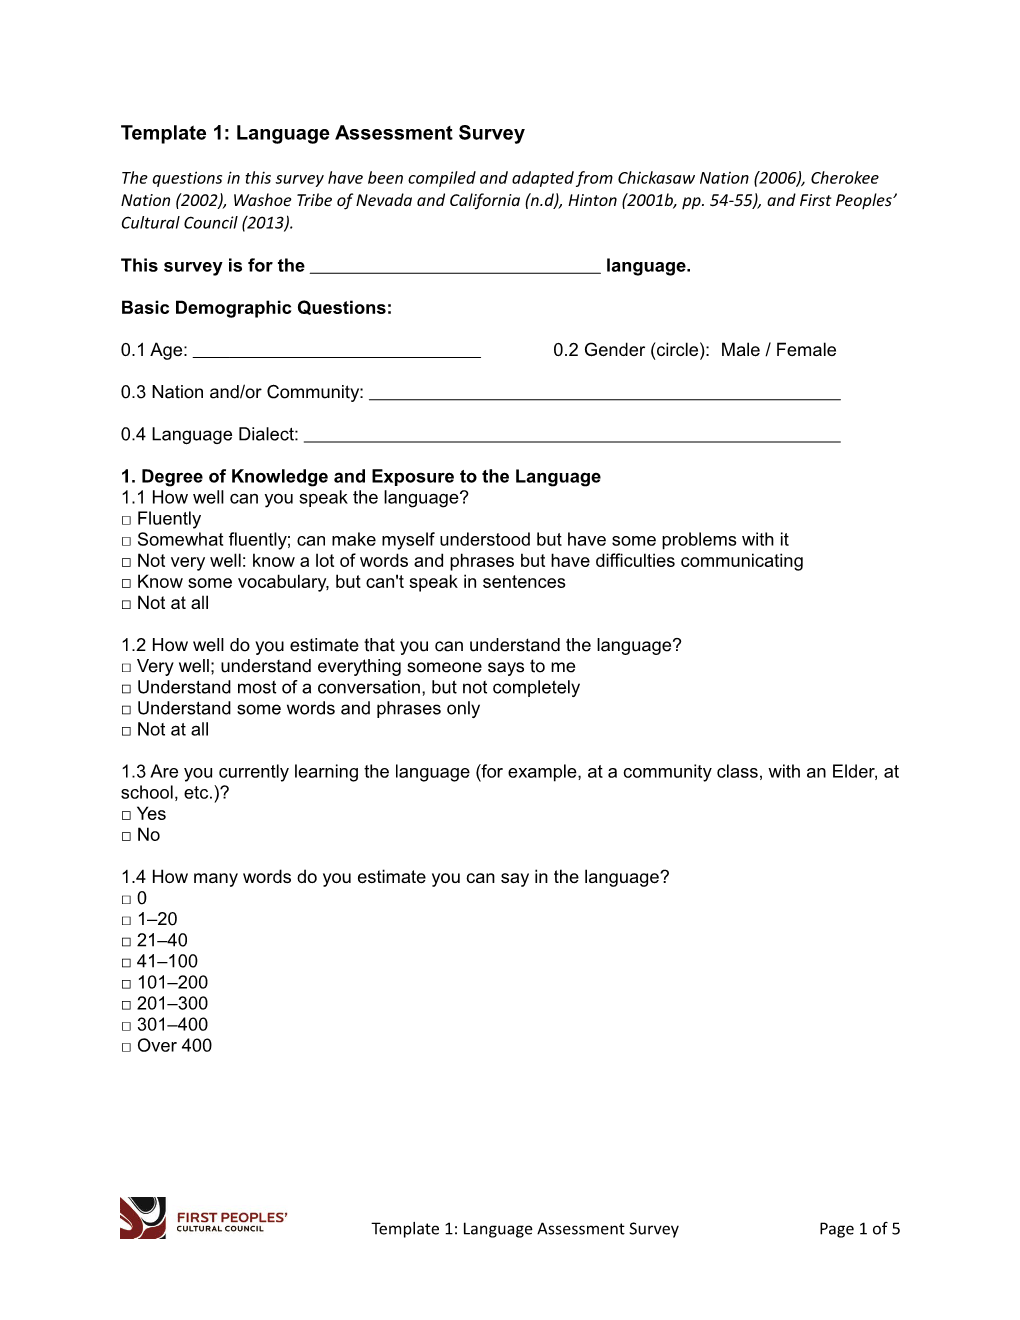 Template 1: Language Assessment Survey